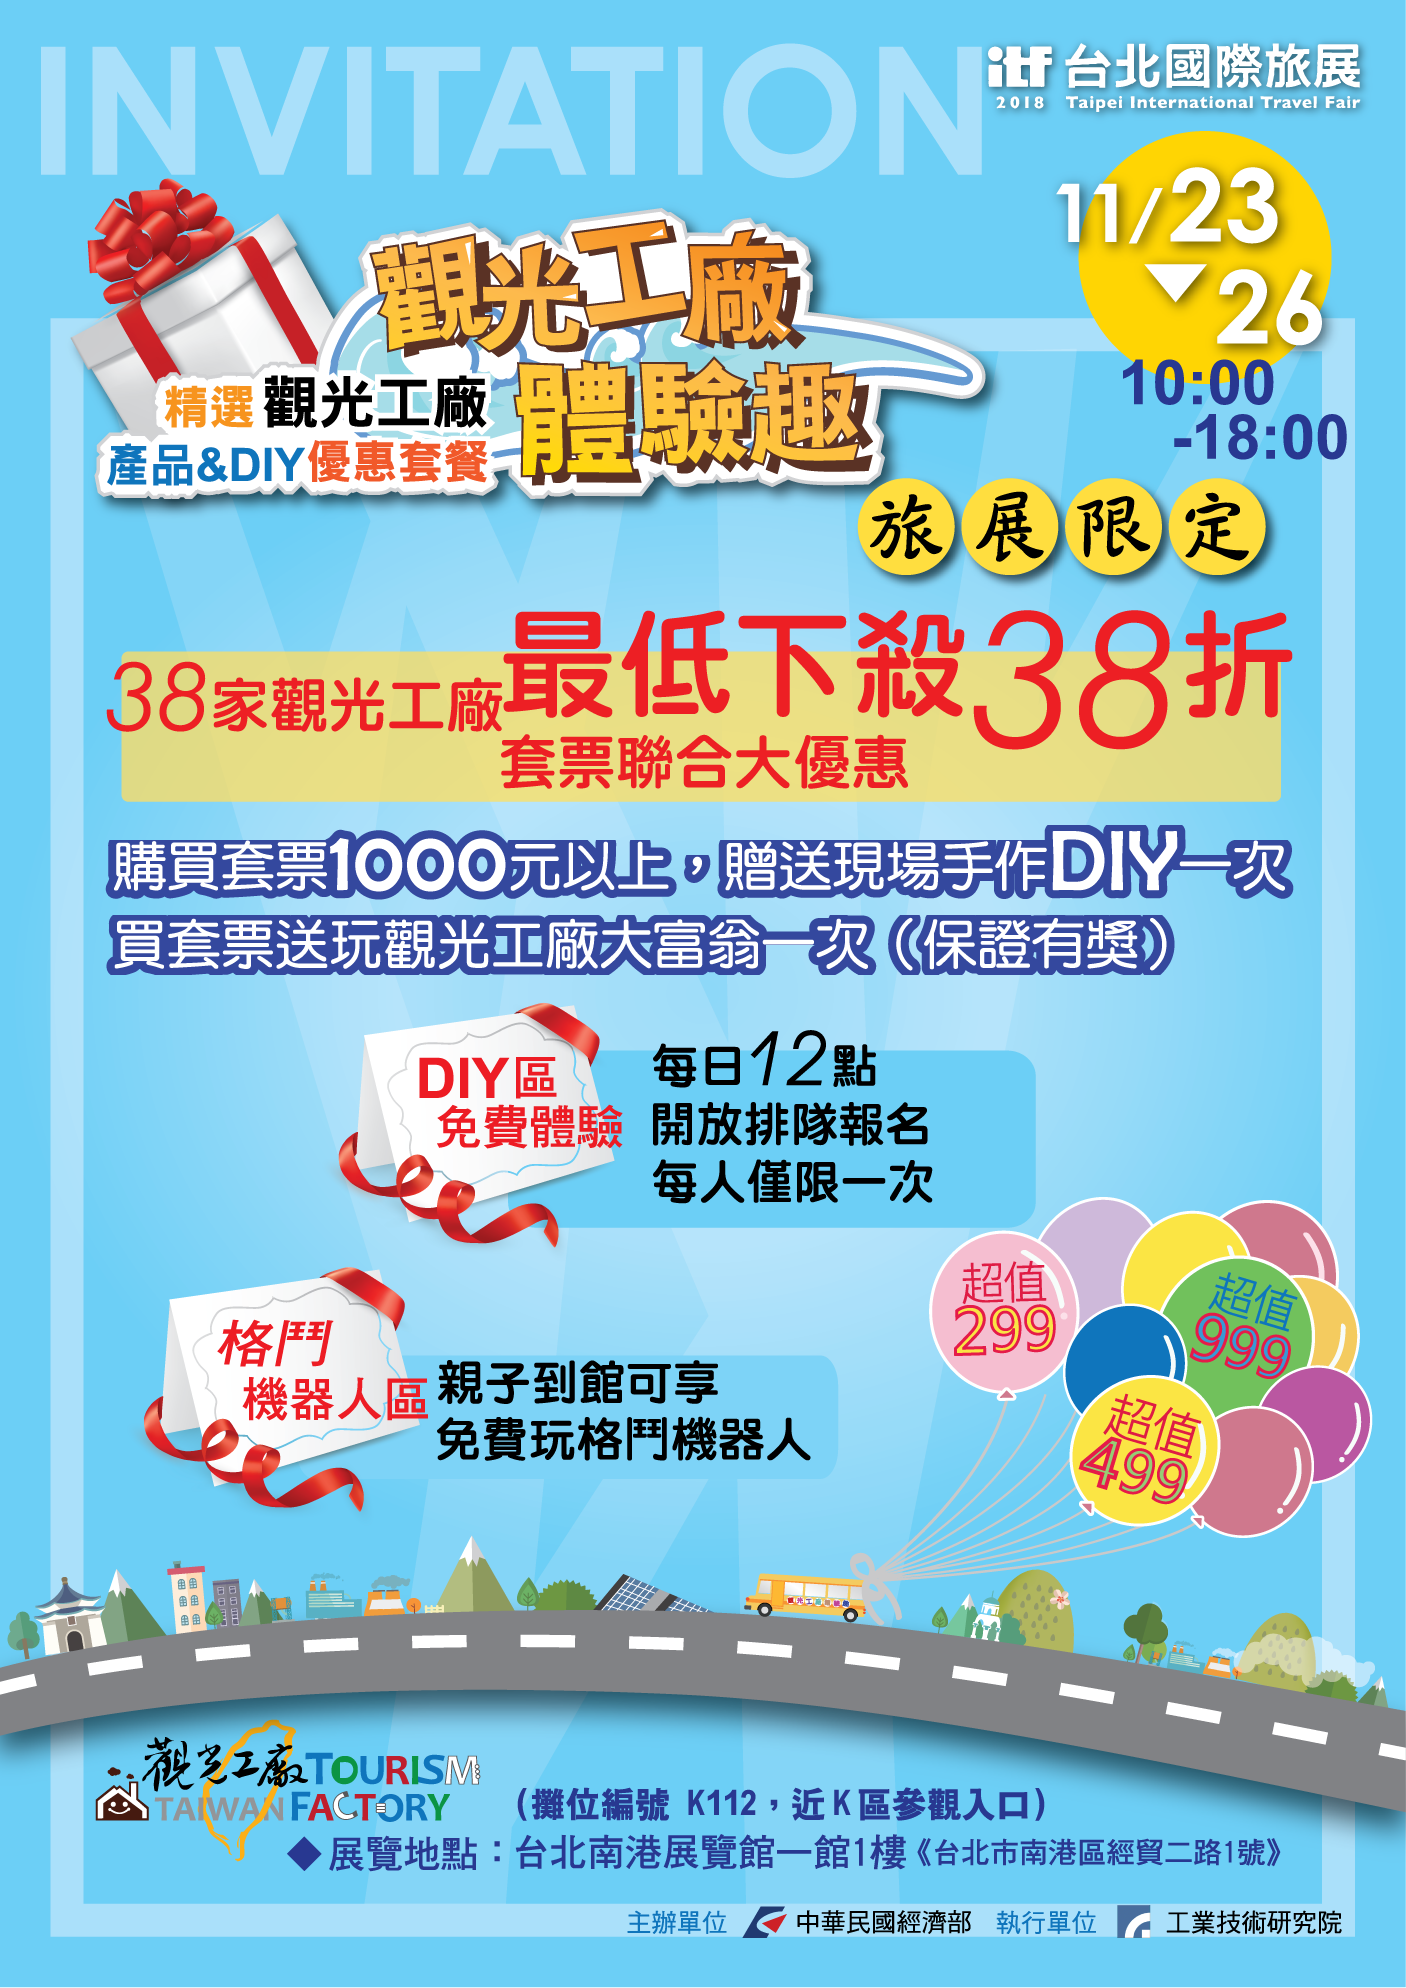 2018台北國際旅展電子邀卡